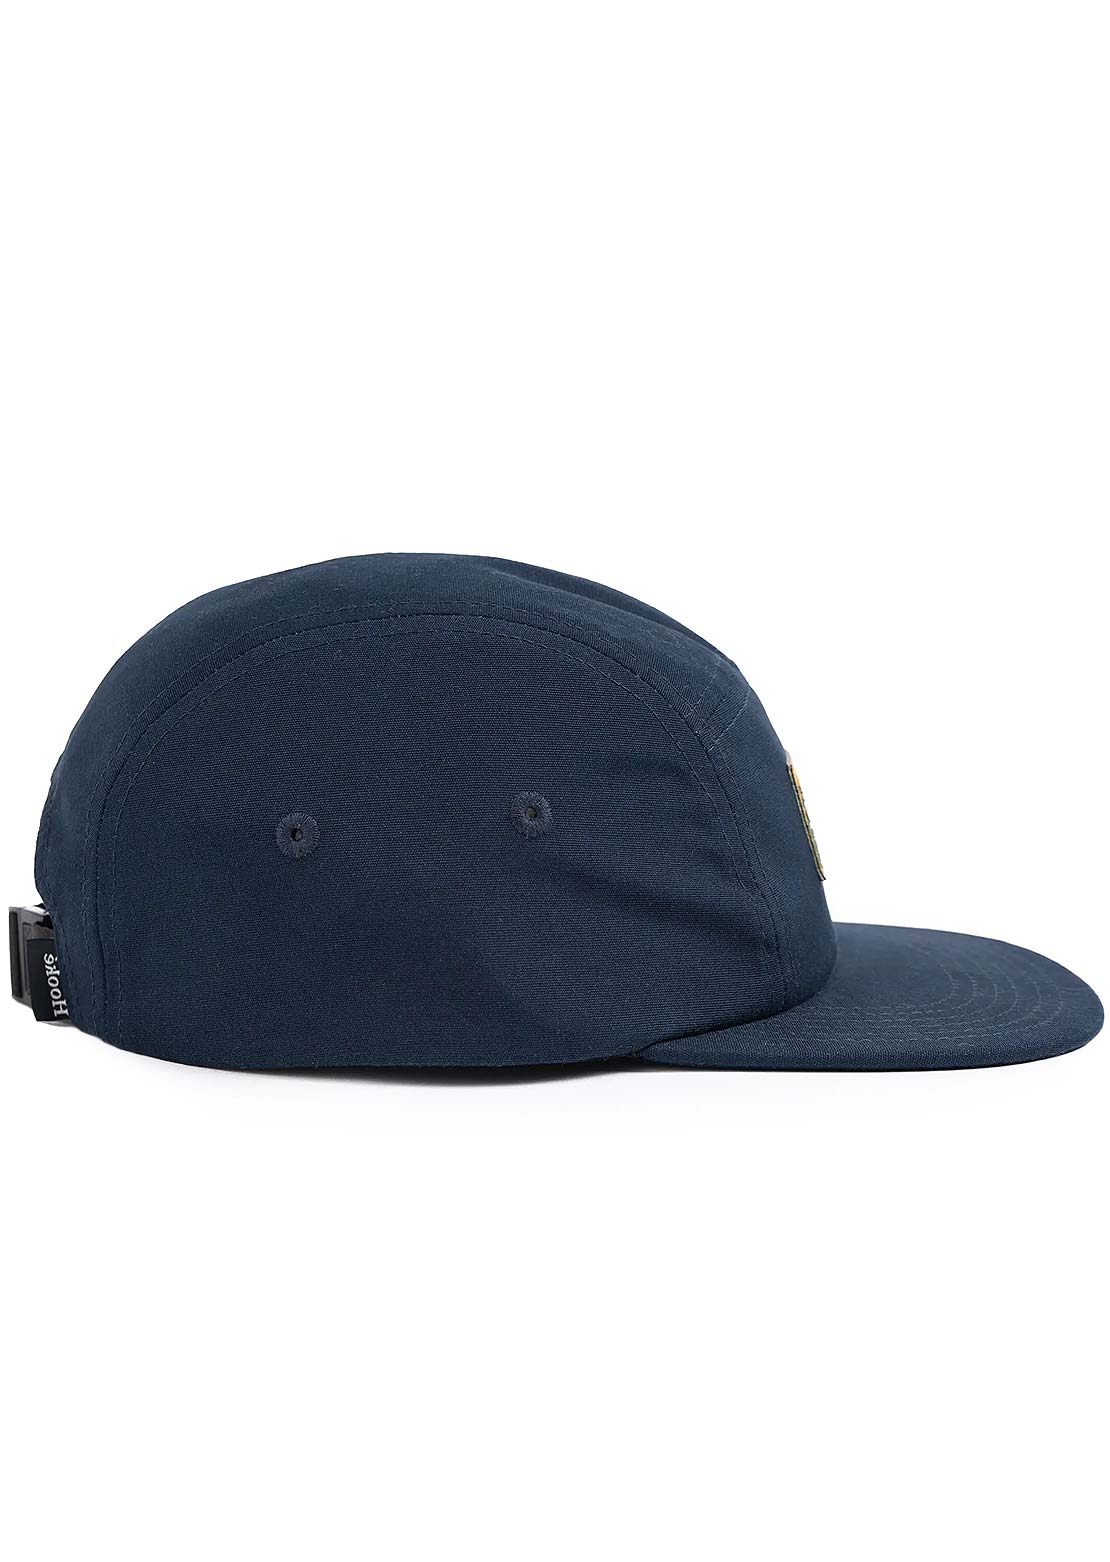 Hooké Landscape Camper Hat Navy